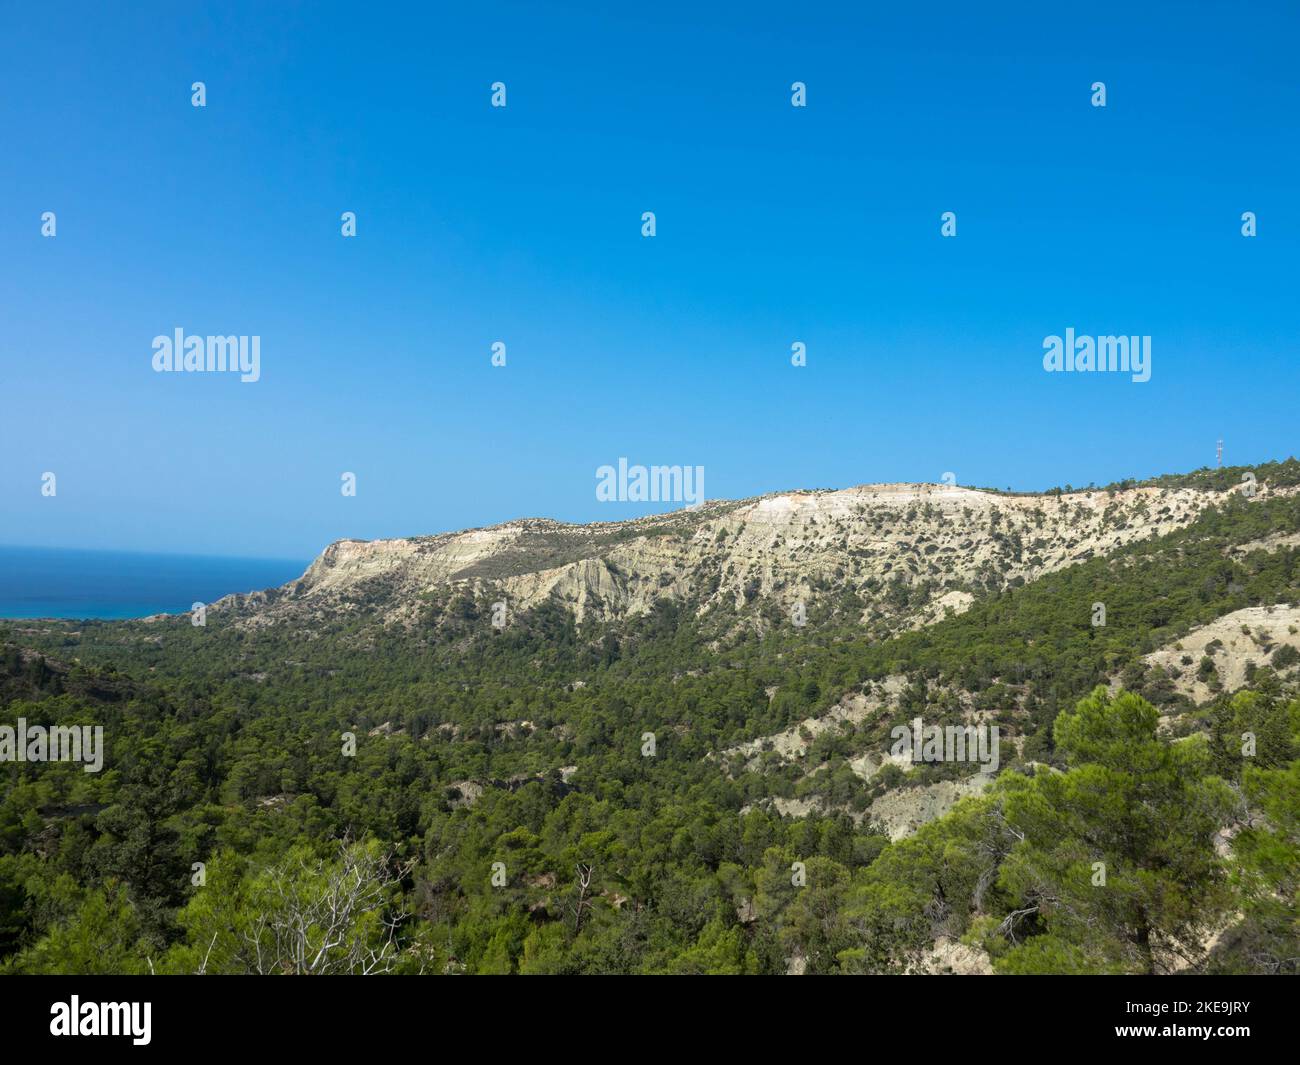 Panoramablick auf typisch griechische mediterrane Landschaft mit Hügel, Tannen und Büschen. Tourismus- und Urlaubskonzept. Rhodos-Insel, Griechenland. Stockfoto